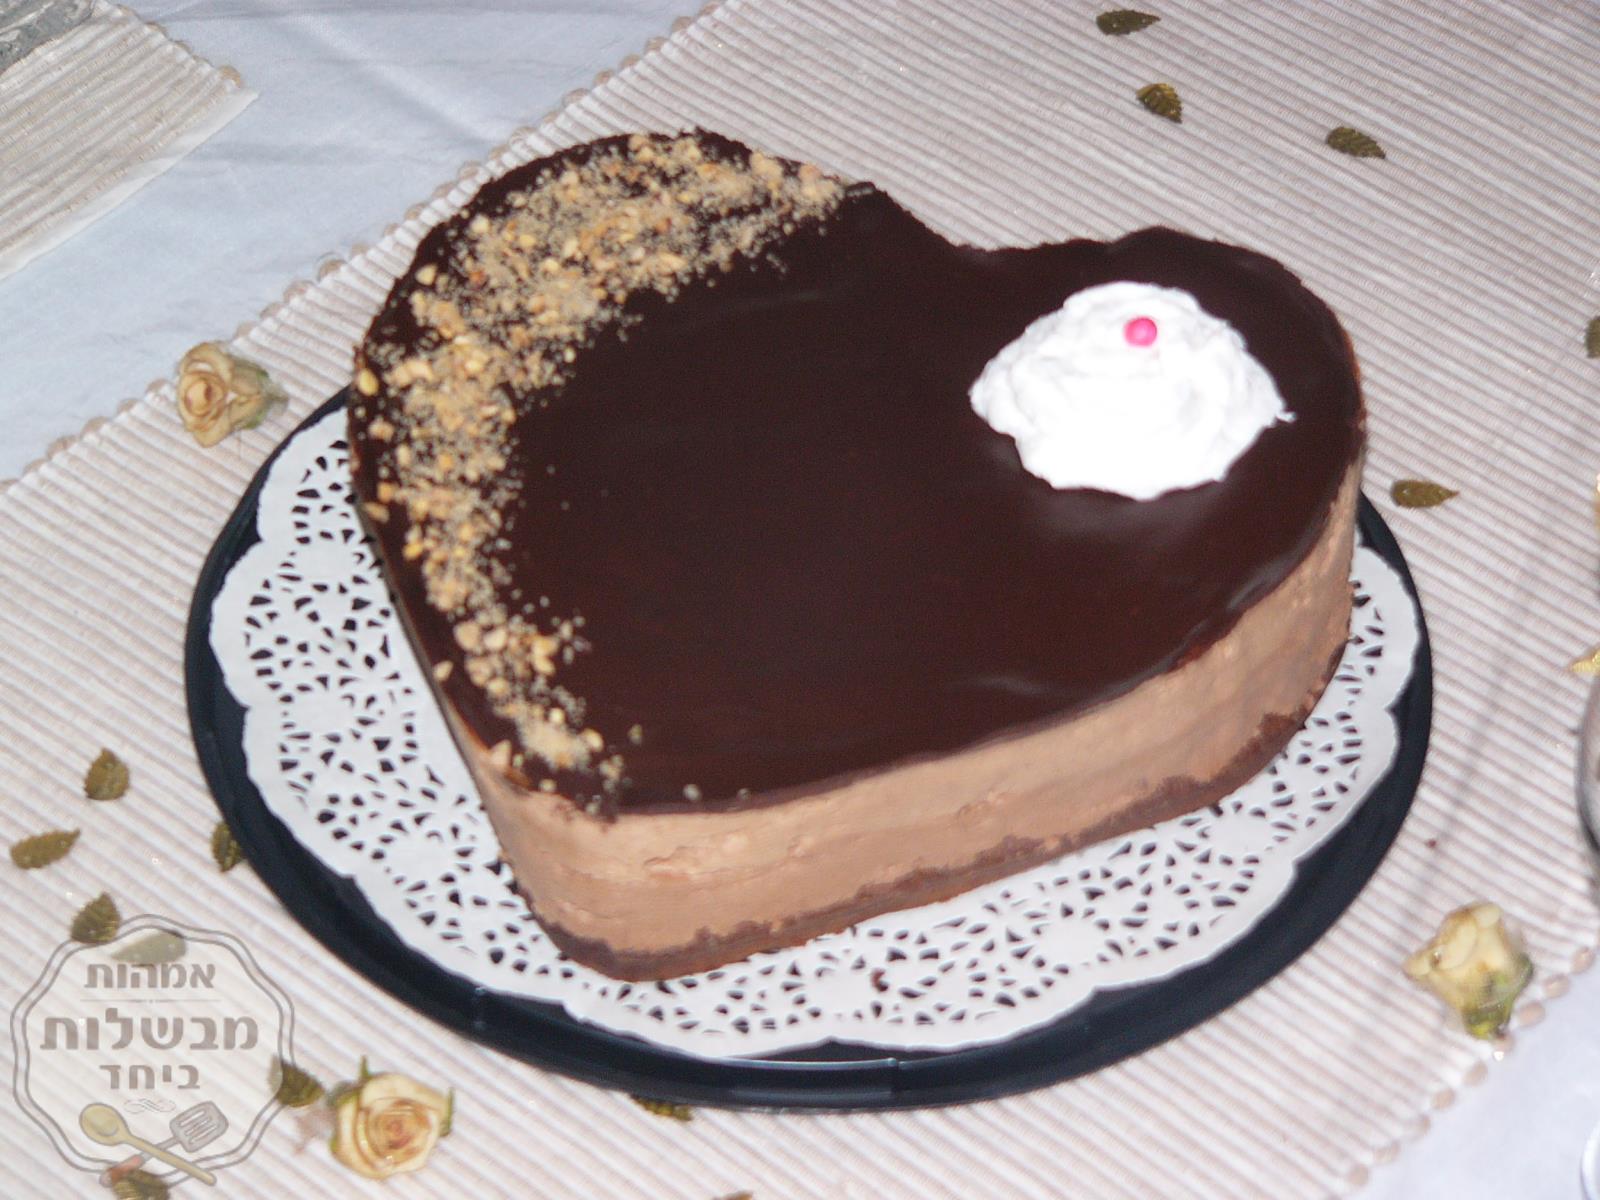 עוגת מוס שוקולד ומוס נוגט על בסיס עוגת שוקולד:)